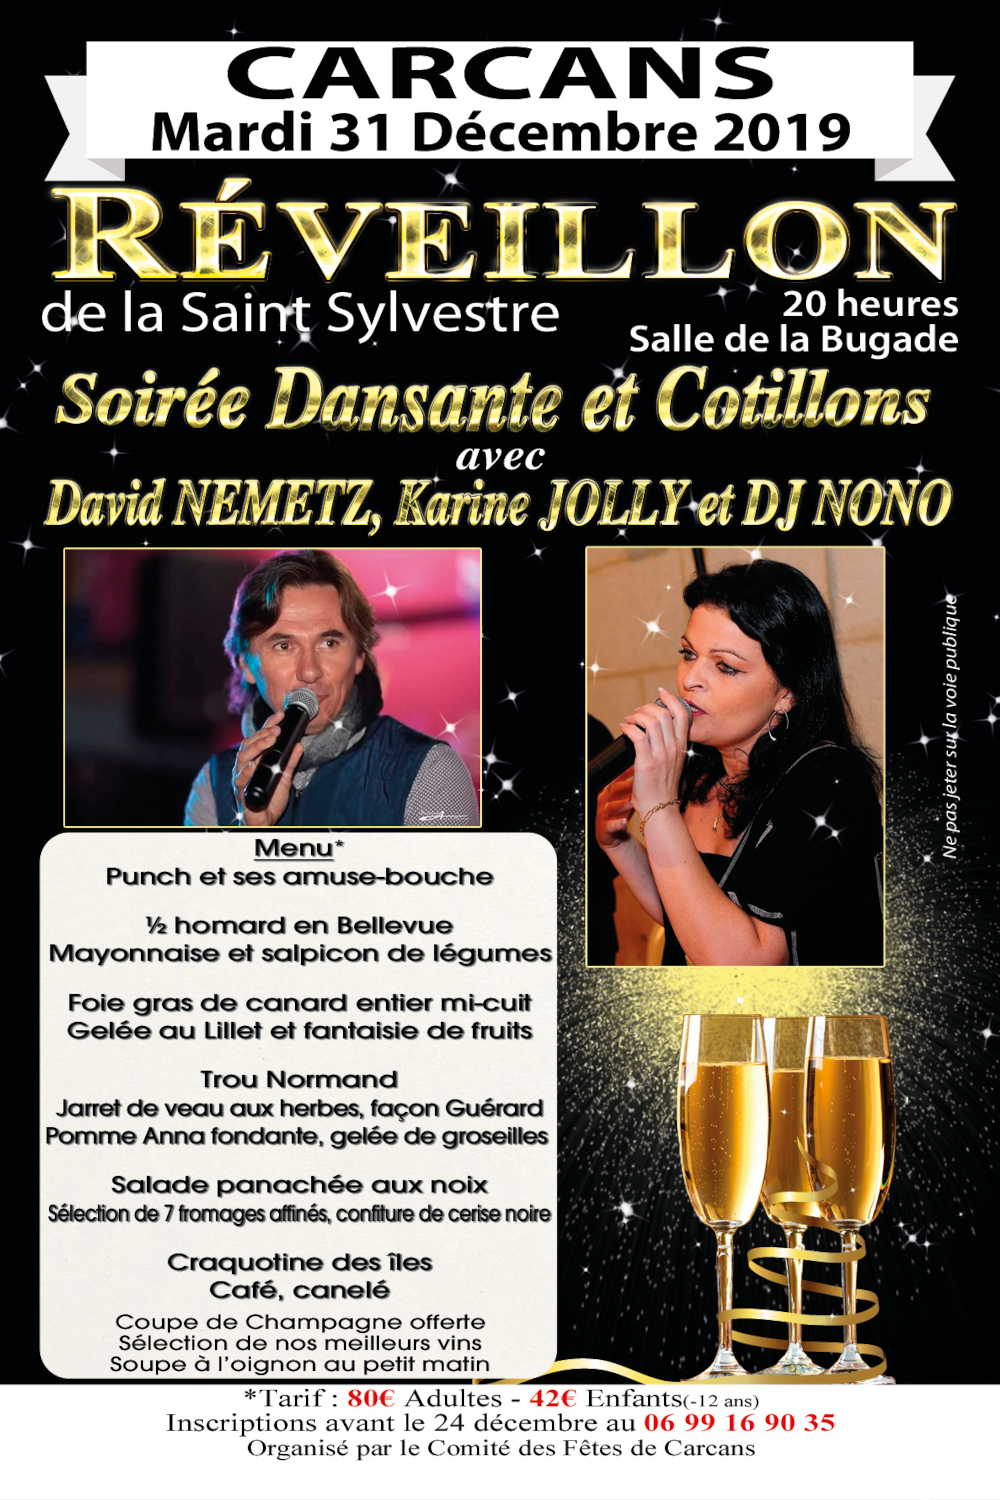 Flyer pour le réveillon de la saint sylvestre à Carcans. Soirée dansante animé par DJ Nono, David Nemetz et Karine Jolly